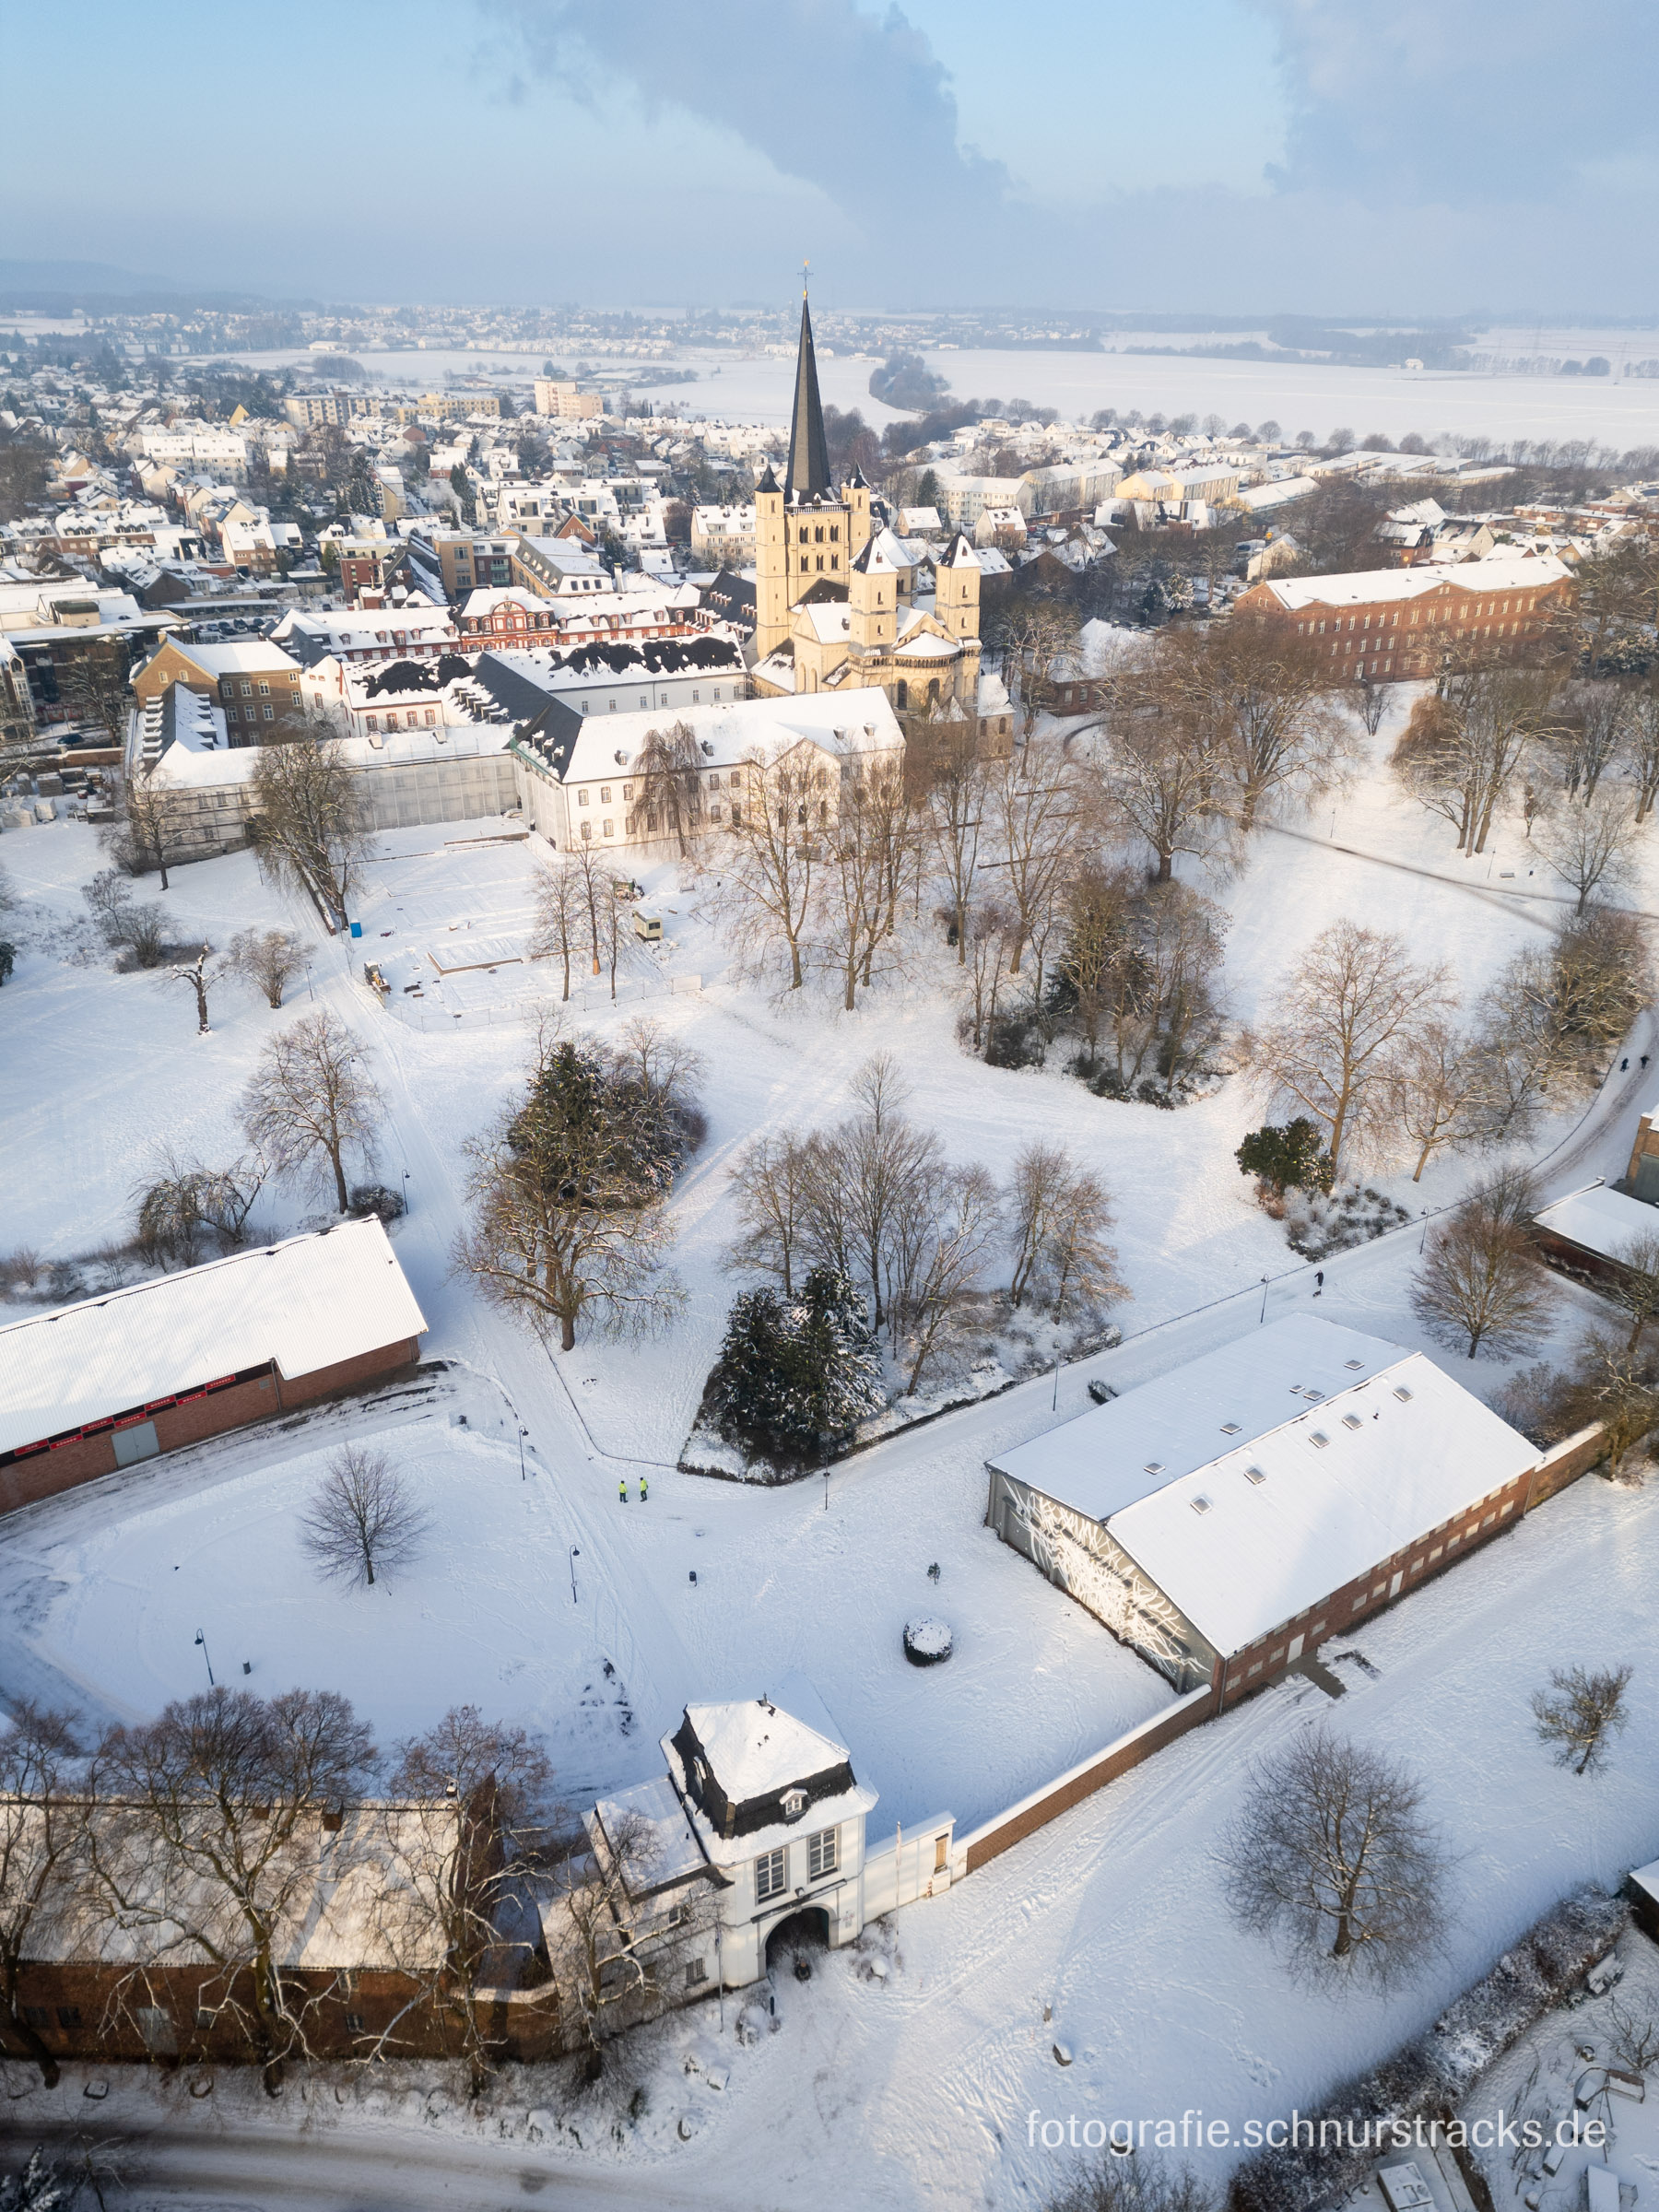 Luftbild der Abtei Brauweiler mit Abteipark im Schnee #240119-0440